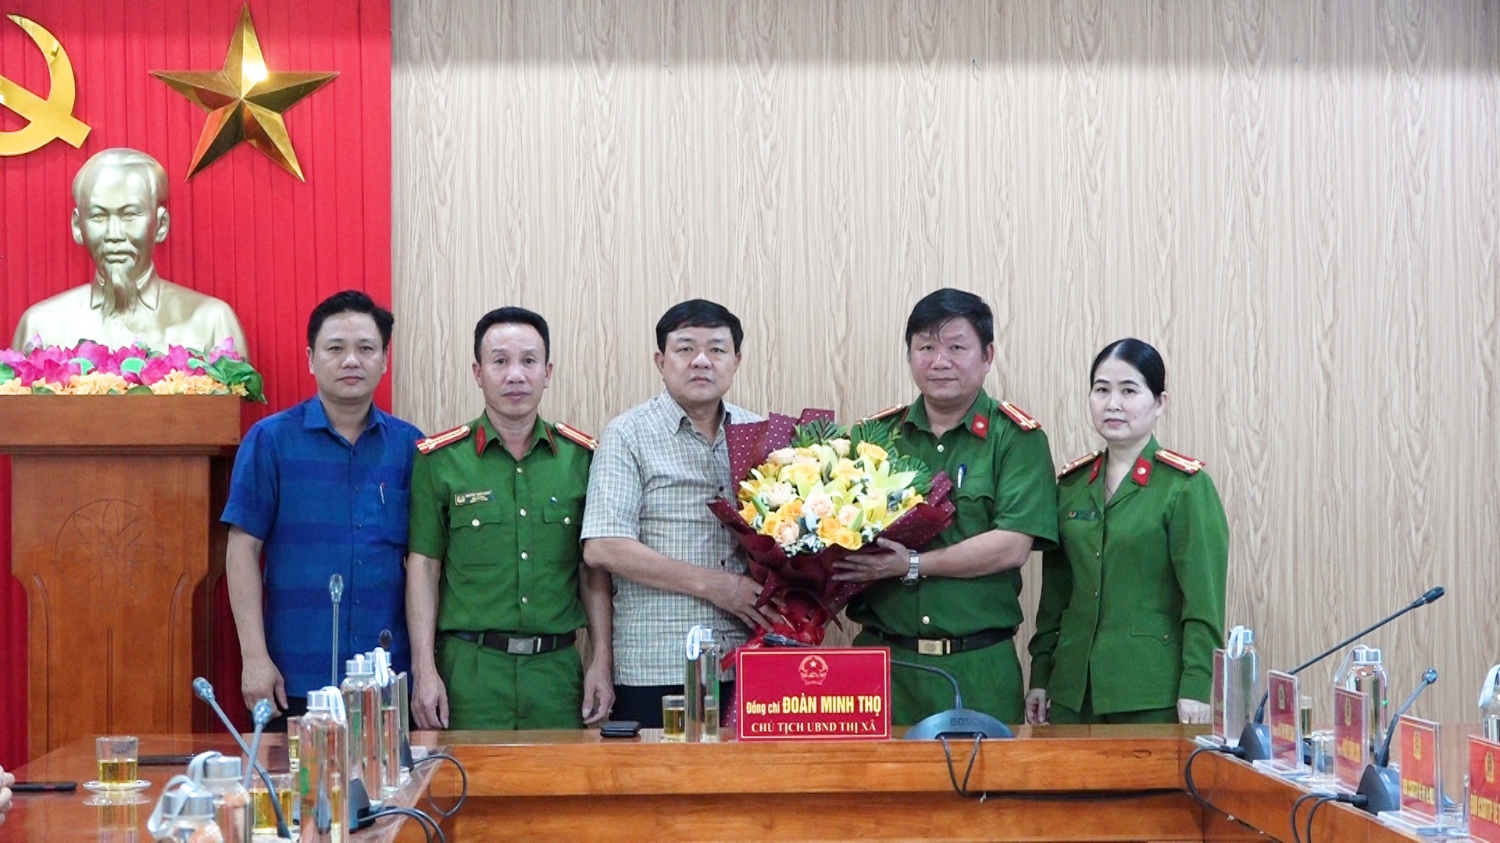 Đồng chí Đoàn Minh Thọ- Phó Bí thư Thị ủy, Chủ tịch UBND thị xã tặng hoa, chúc mừng chiến công phá chuyên án ma túy mang bí số “231V” của Công an thị xã Ba Đồn.